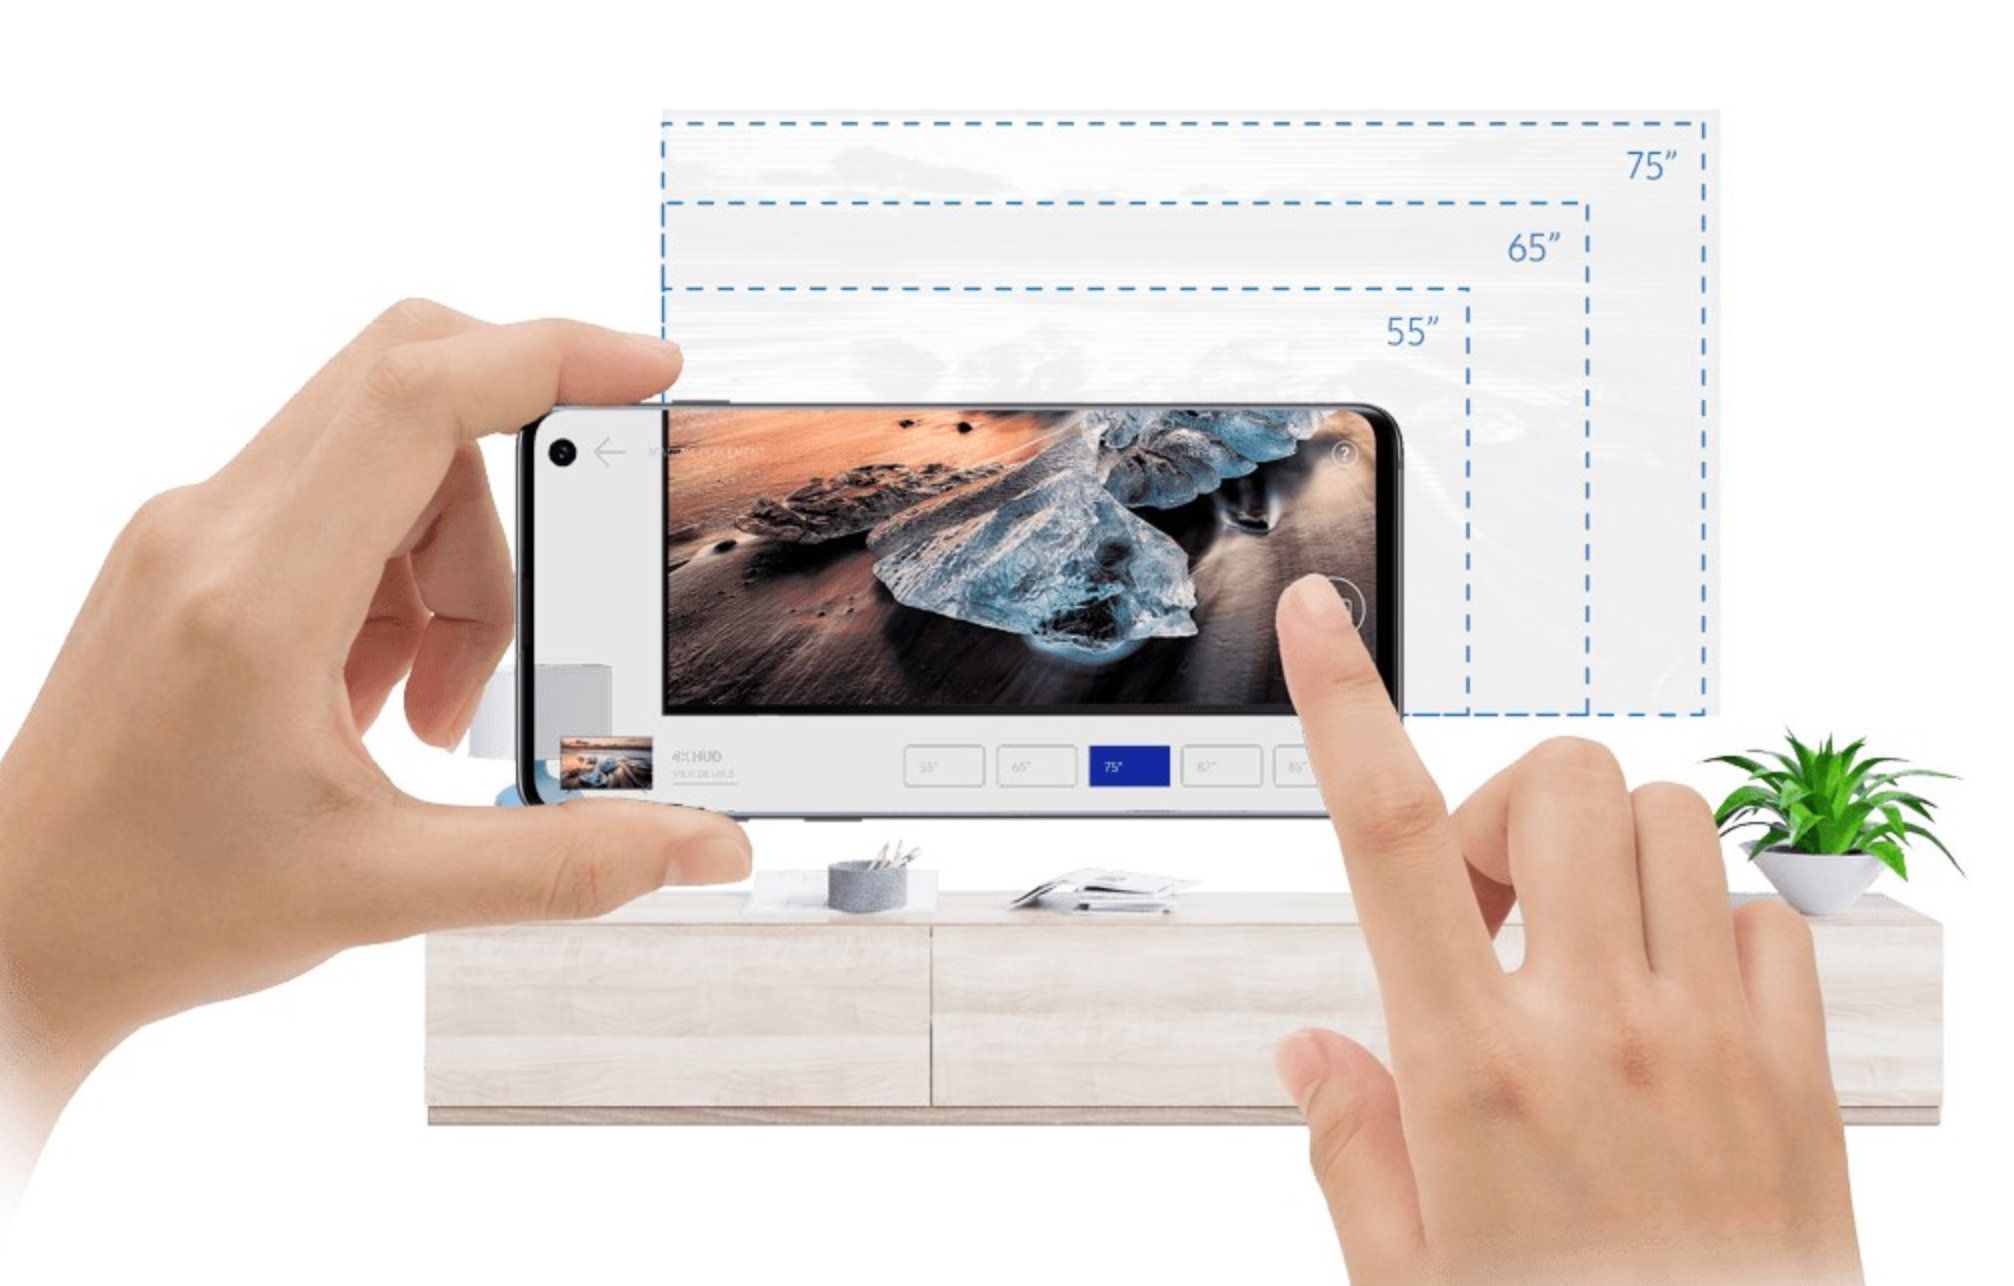 Samsung TV True Fit AR app